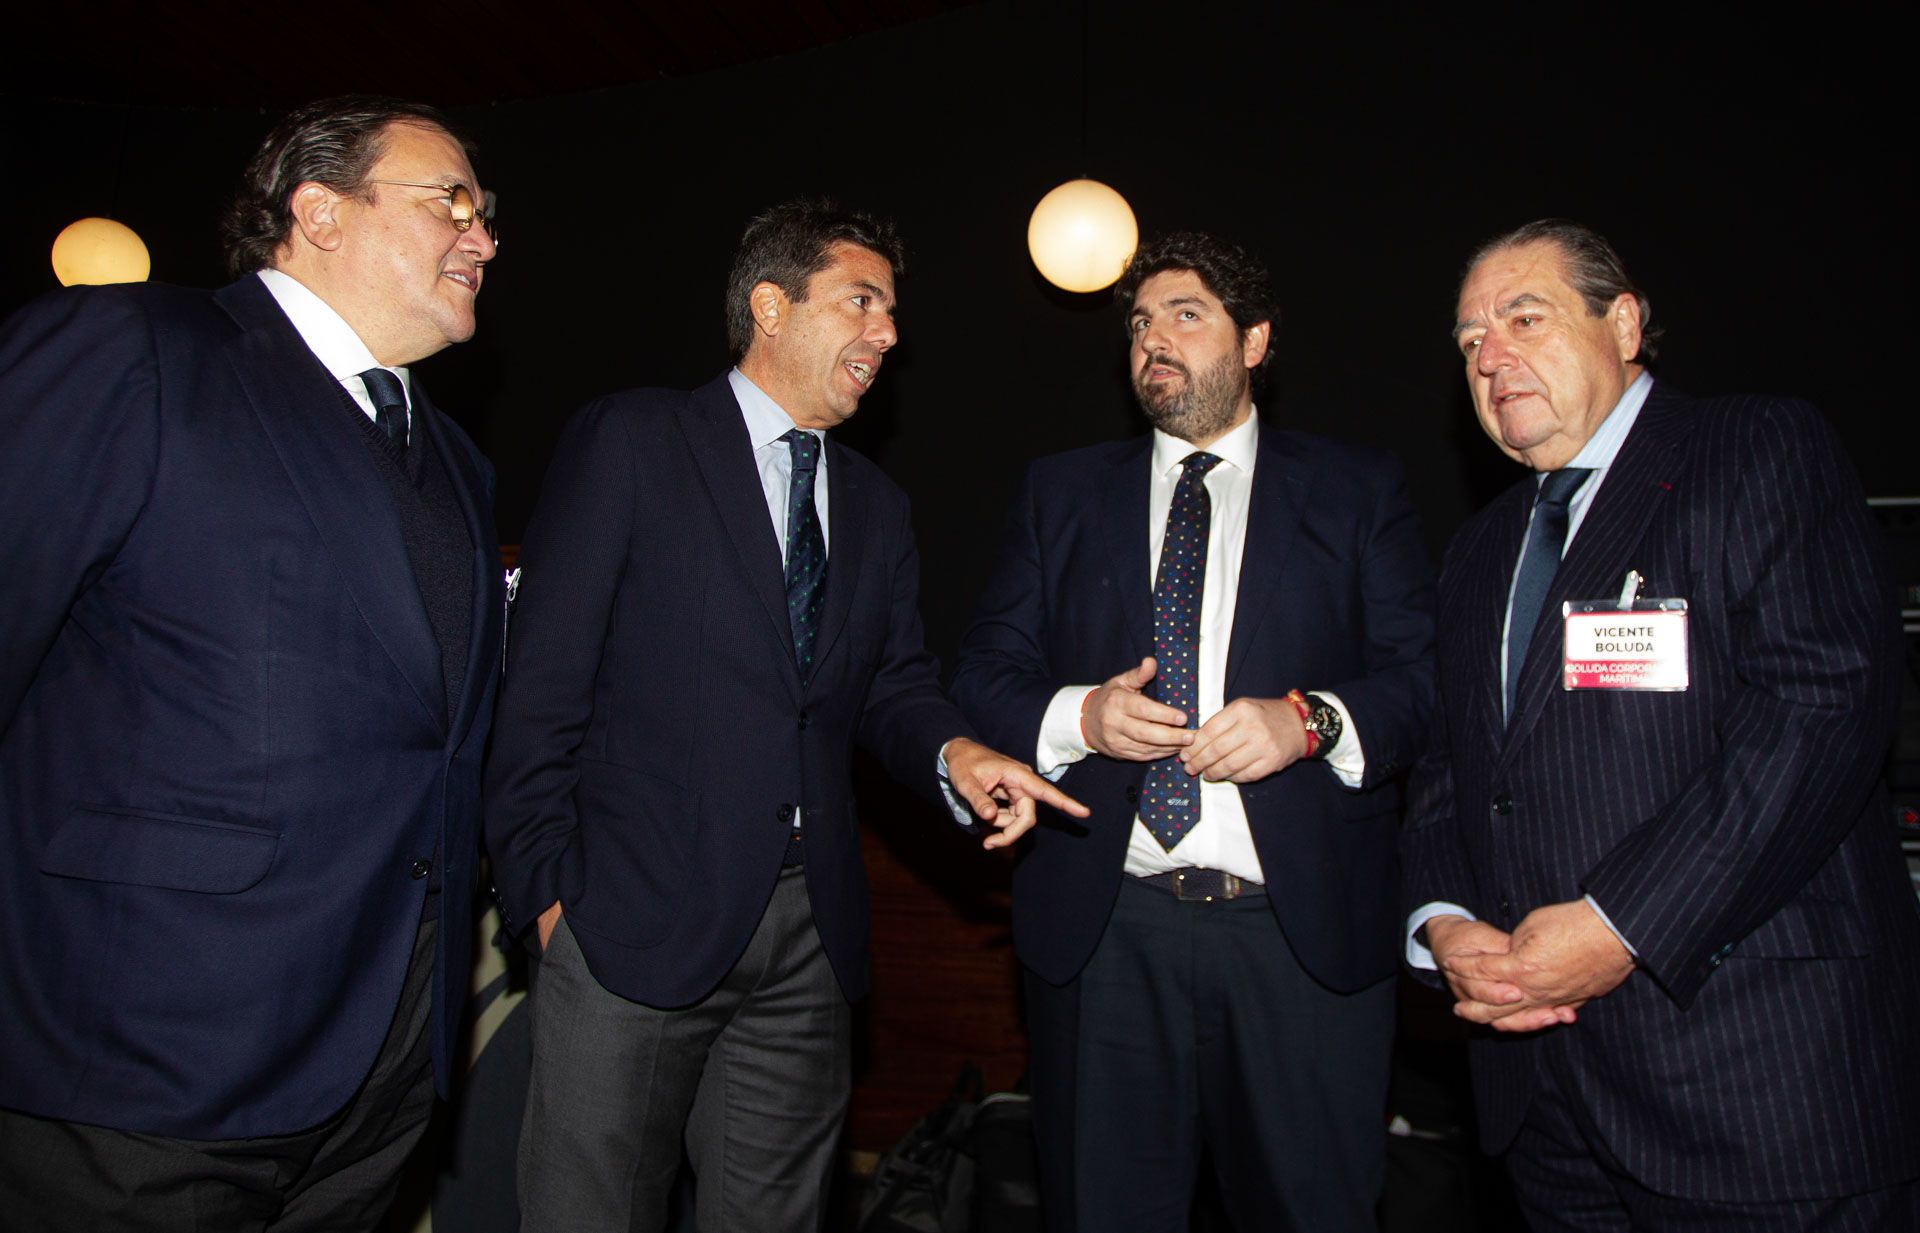 López Miras interviene en el Pleno de la Asociación Valenciana de Empresarios (AVE)